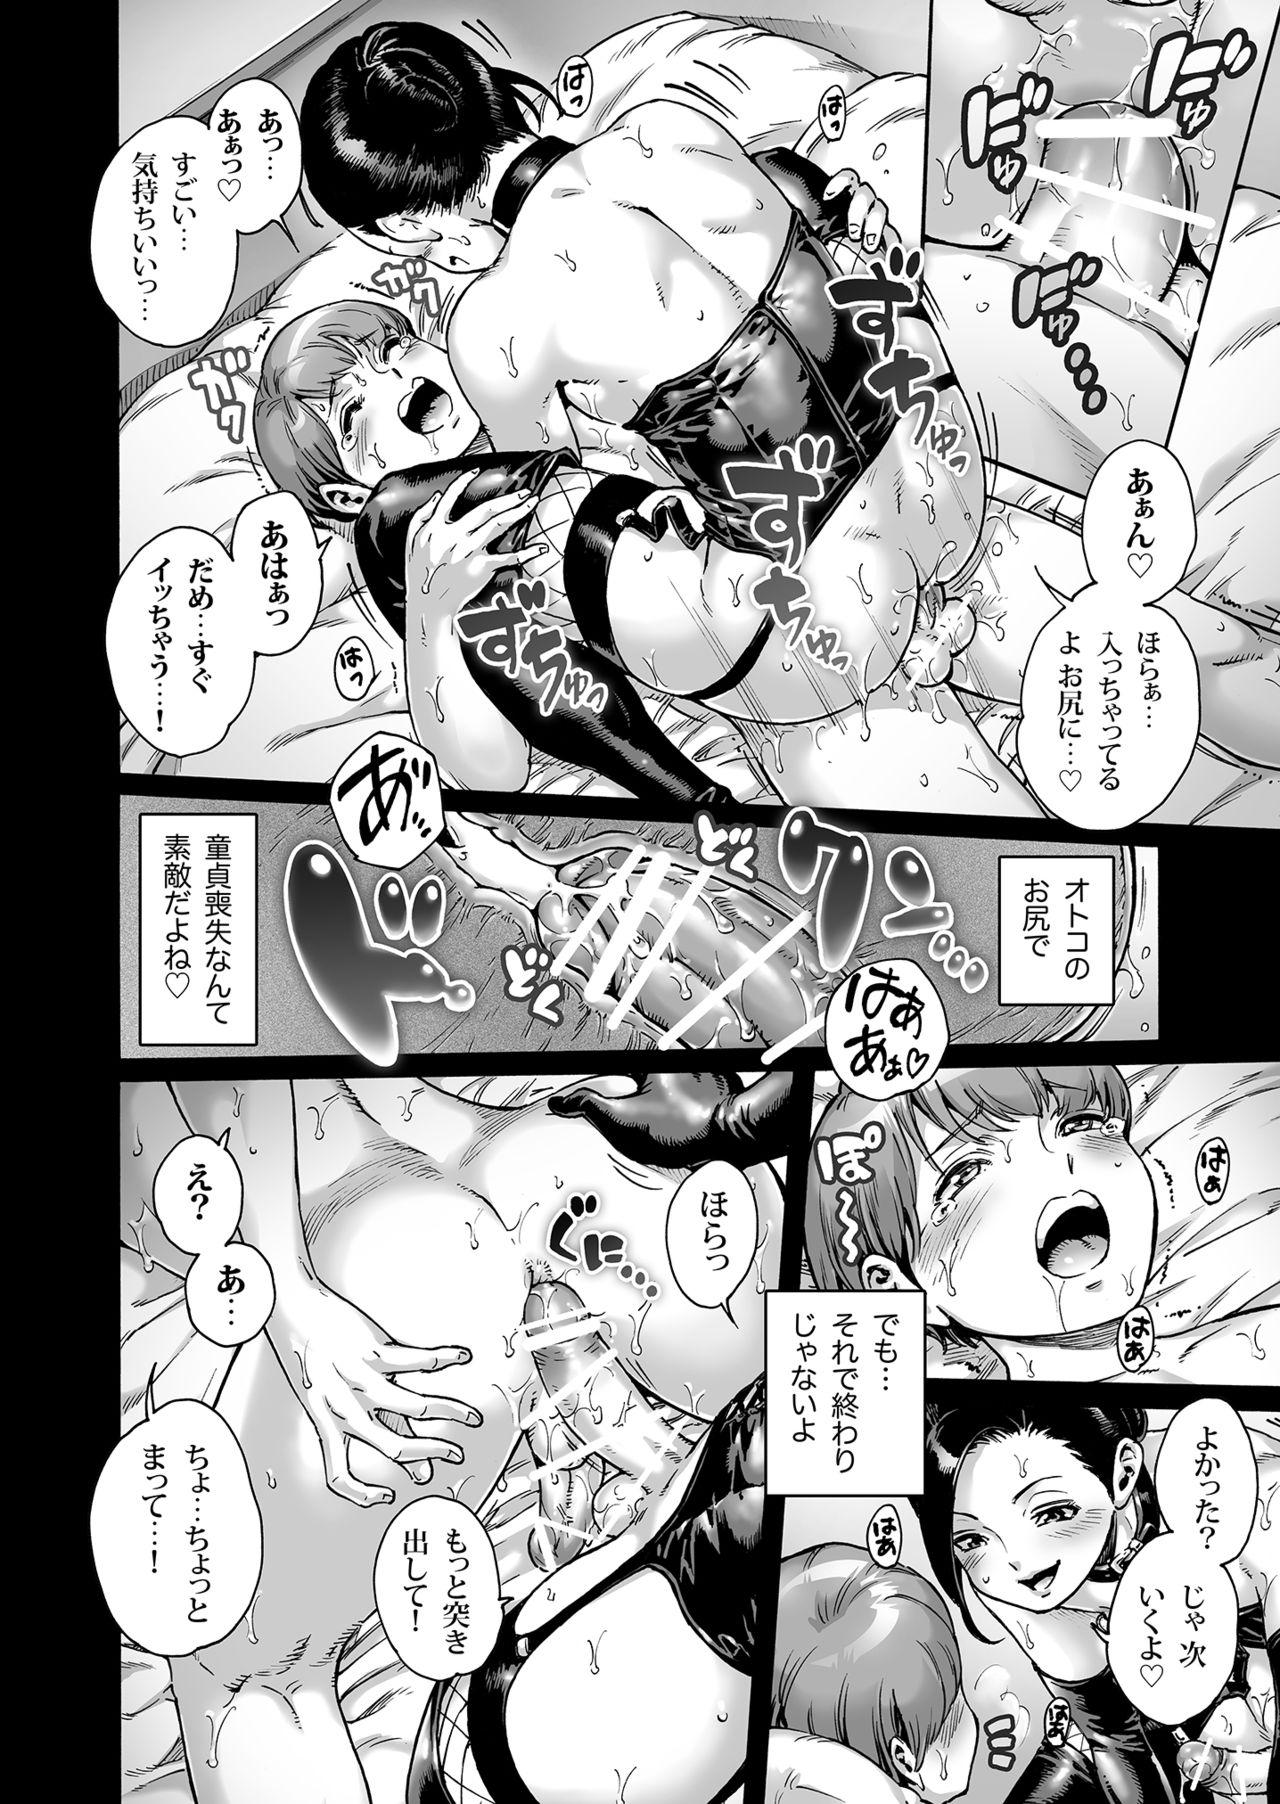 Blowjob Onoko to. ACT 9 Shikomare Onoko - Original Exibicionismo - Page 9